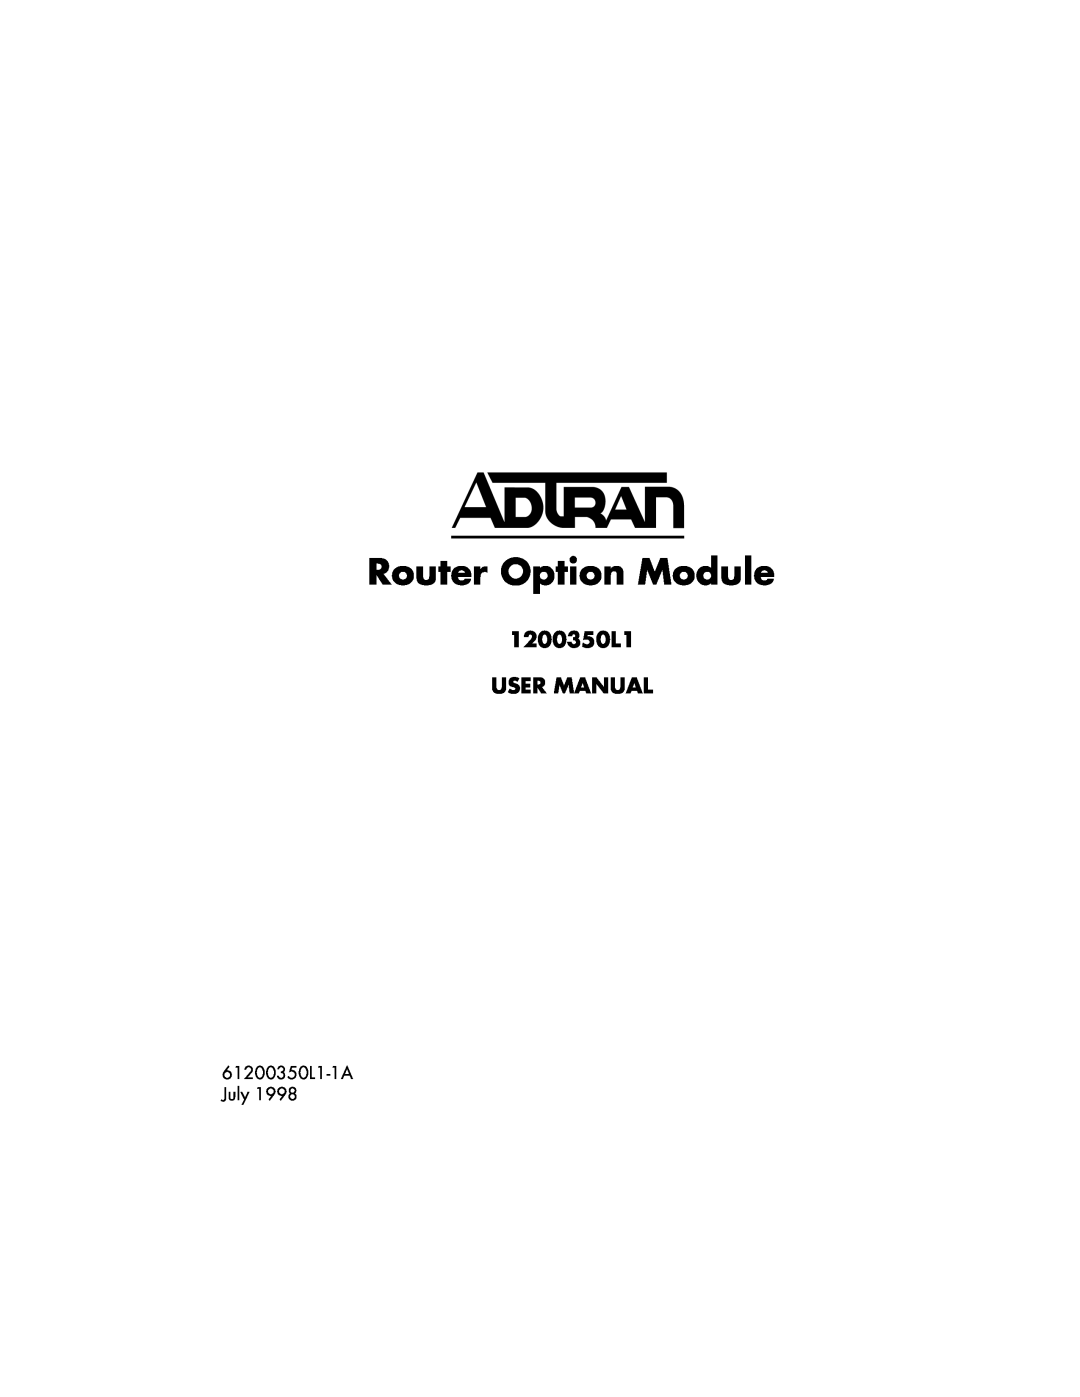 ADTRAN user manual 1200350L1 USER MANUAL, 61200350L1-1A July, Router Option Module 